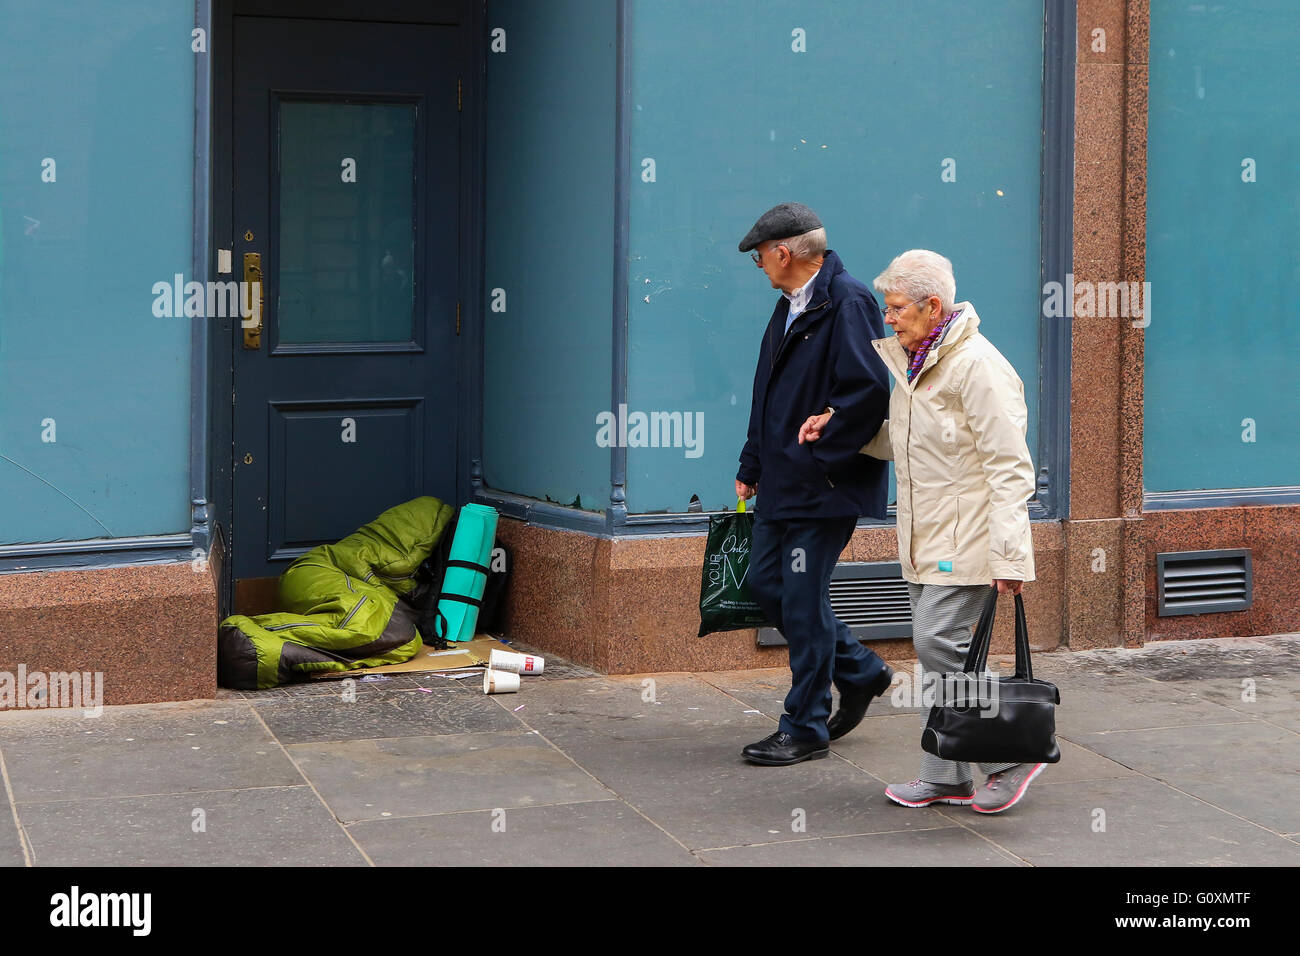 Mann und Frau zu Fuß vorbei an jemand schlafen rau in einem Shop Eingang, Glasgow, Stadt, Schottland, Vereinigtes Königreich Stockfoto